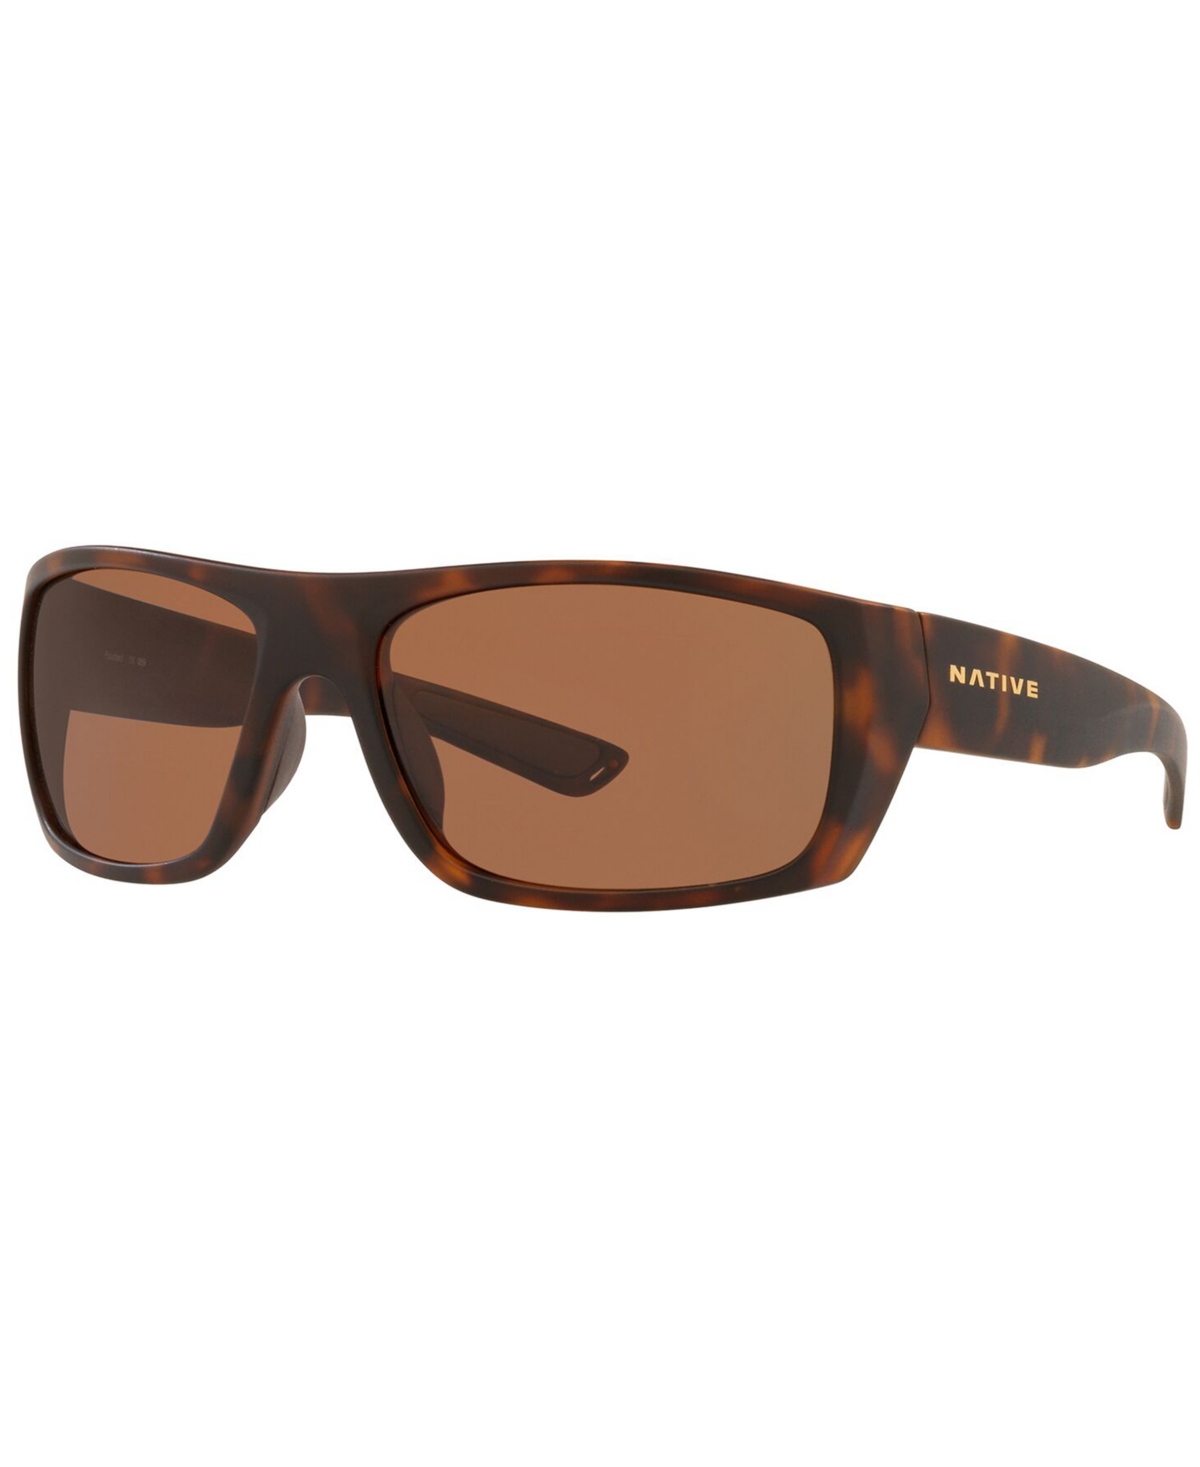 Native Men's Polarized Sunglasses, XD0063 62 - DESERT TORTOISE/BROWN